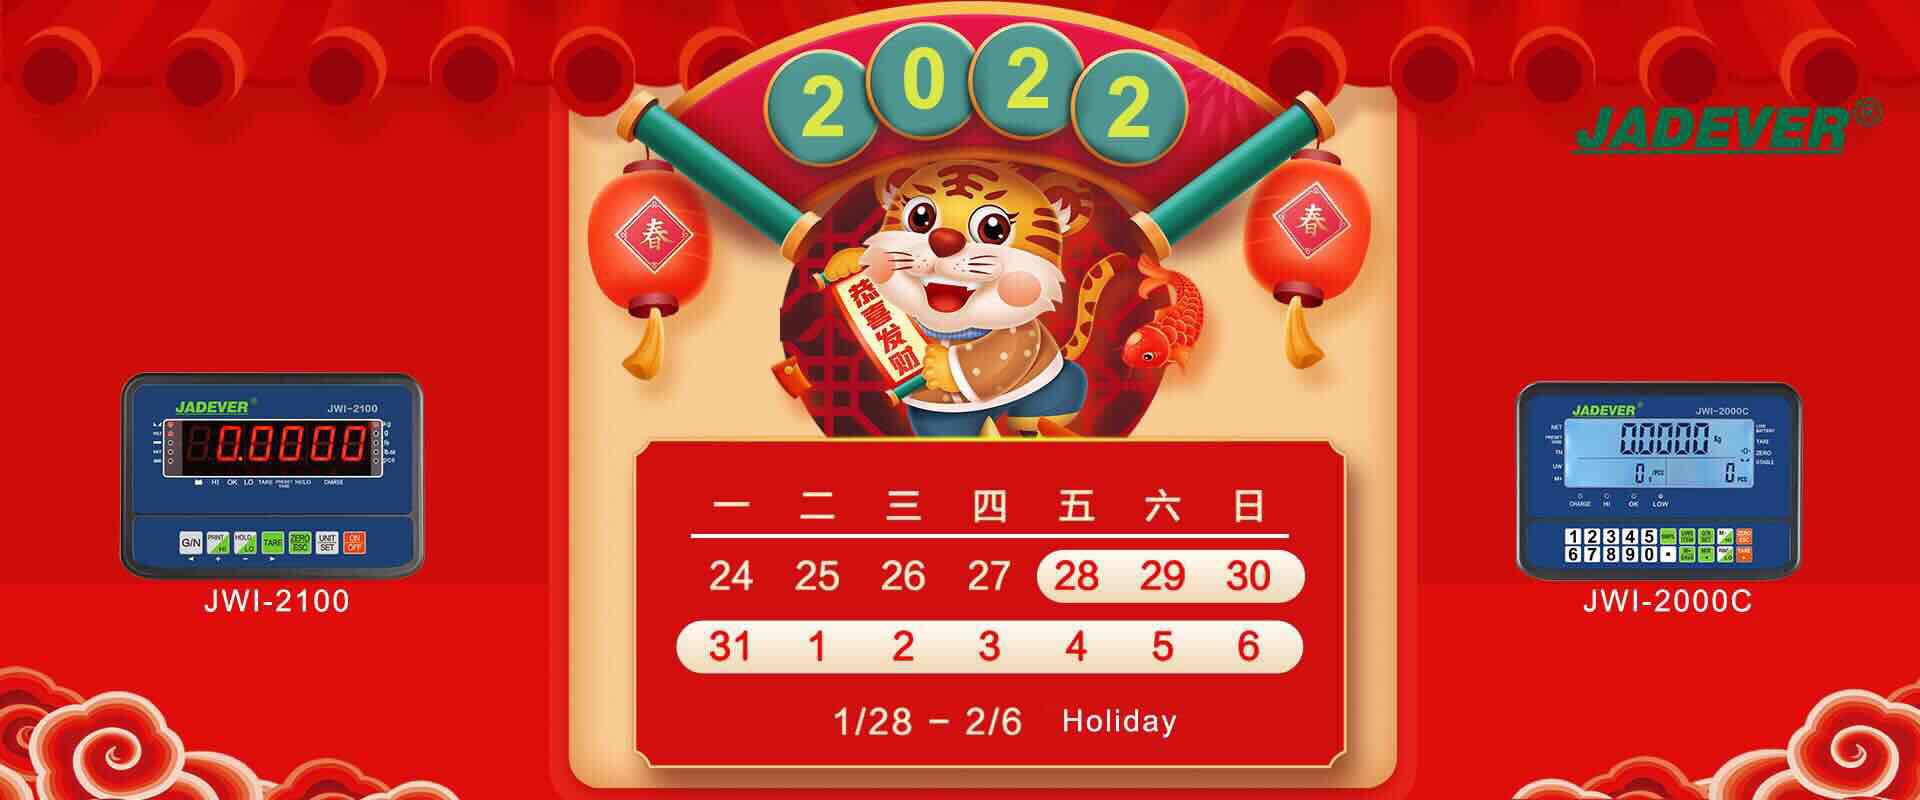 הודעת חגים - ראש השנה הירח הסינית 2022